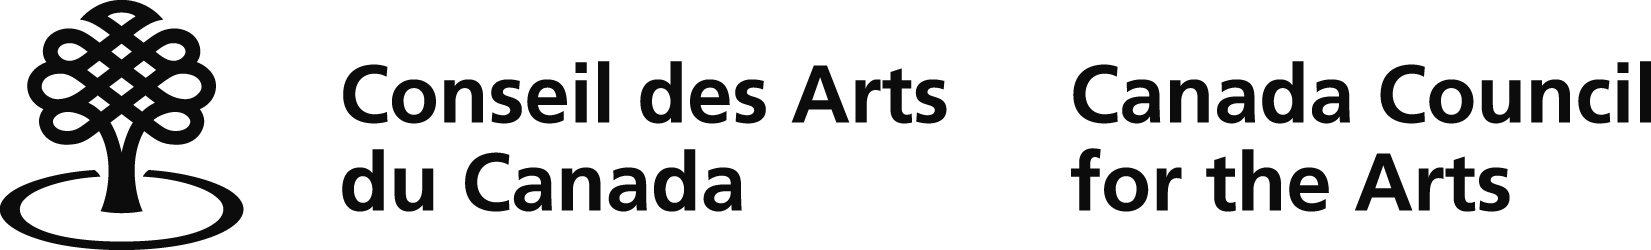 logo-conseil-des-arts-du-canada.png